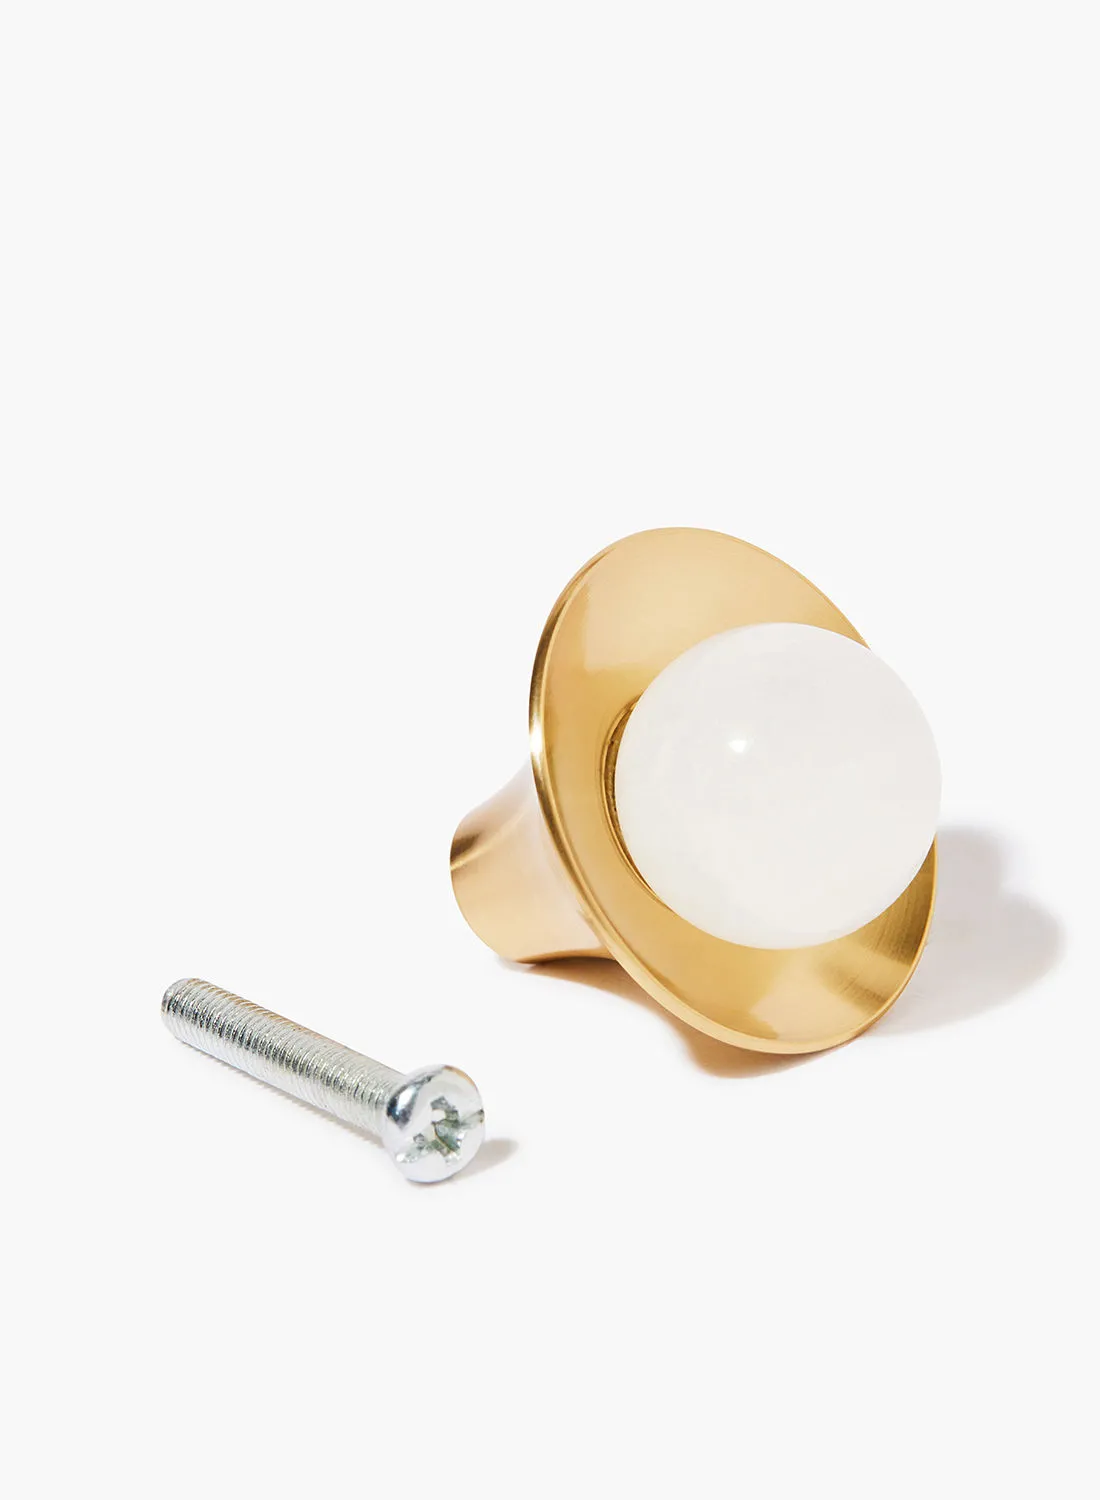 Amal Elegant Design Drawer Cabinet Knob Gold/White 32 x 34millimeter